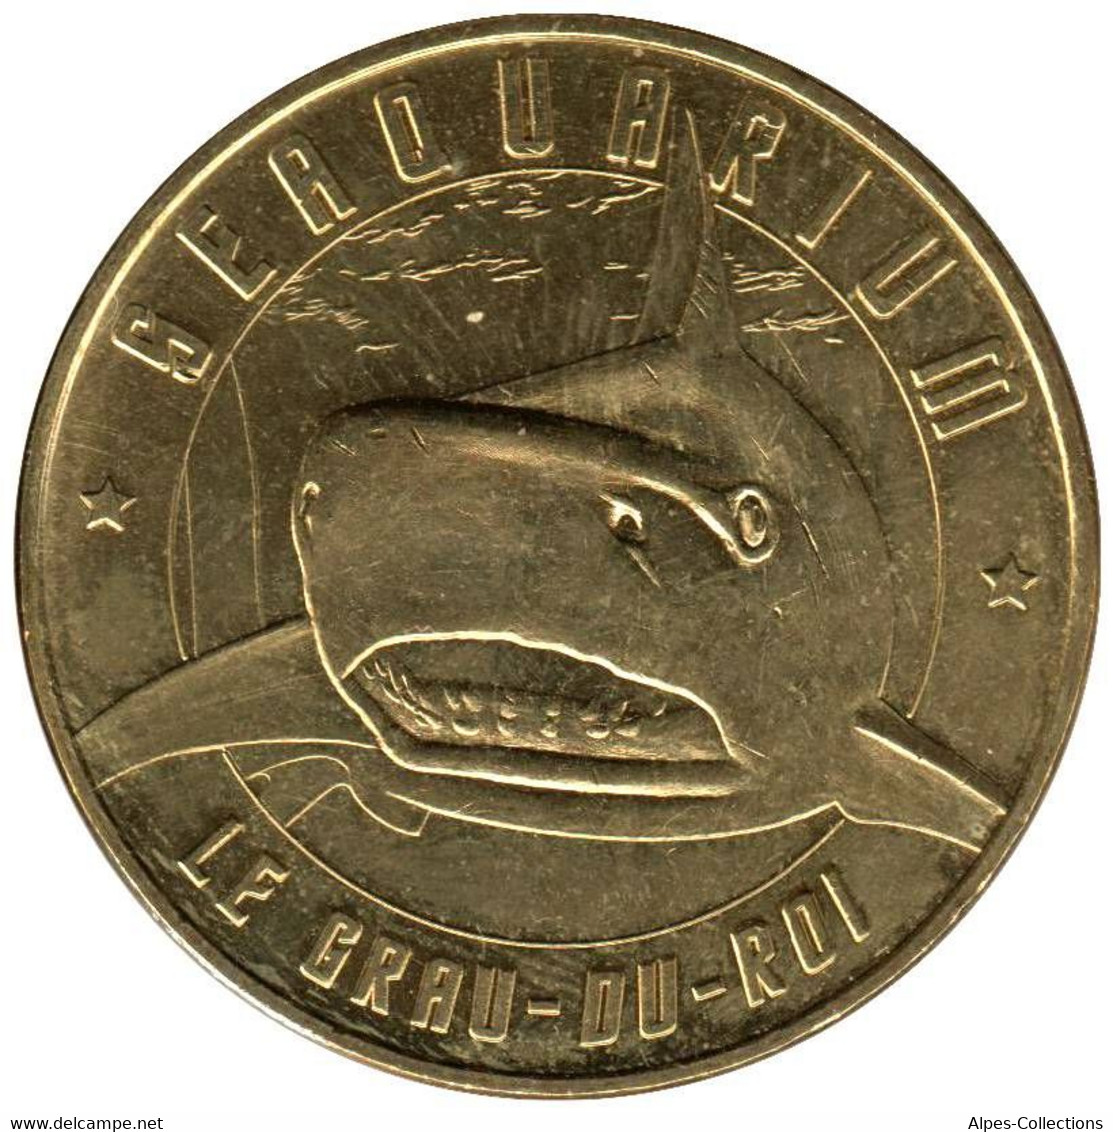 30-0624 - JETON TOURISTIQUE MDP - Le Grau-du-Roi - Seaquarium Le Requin - 2015.1 - 2015